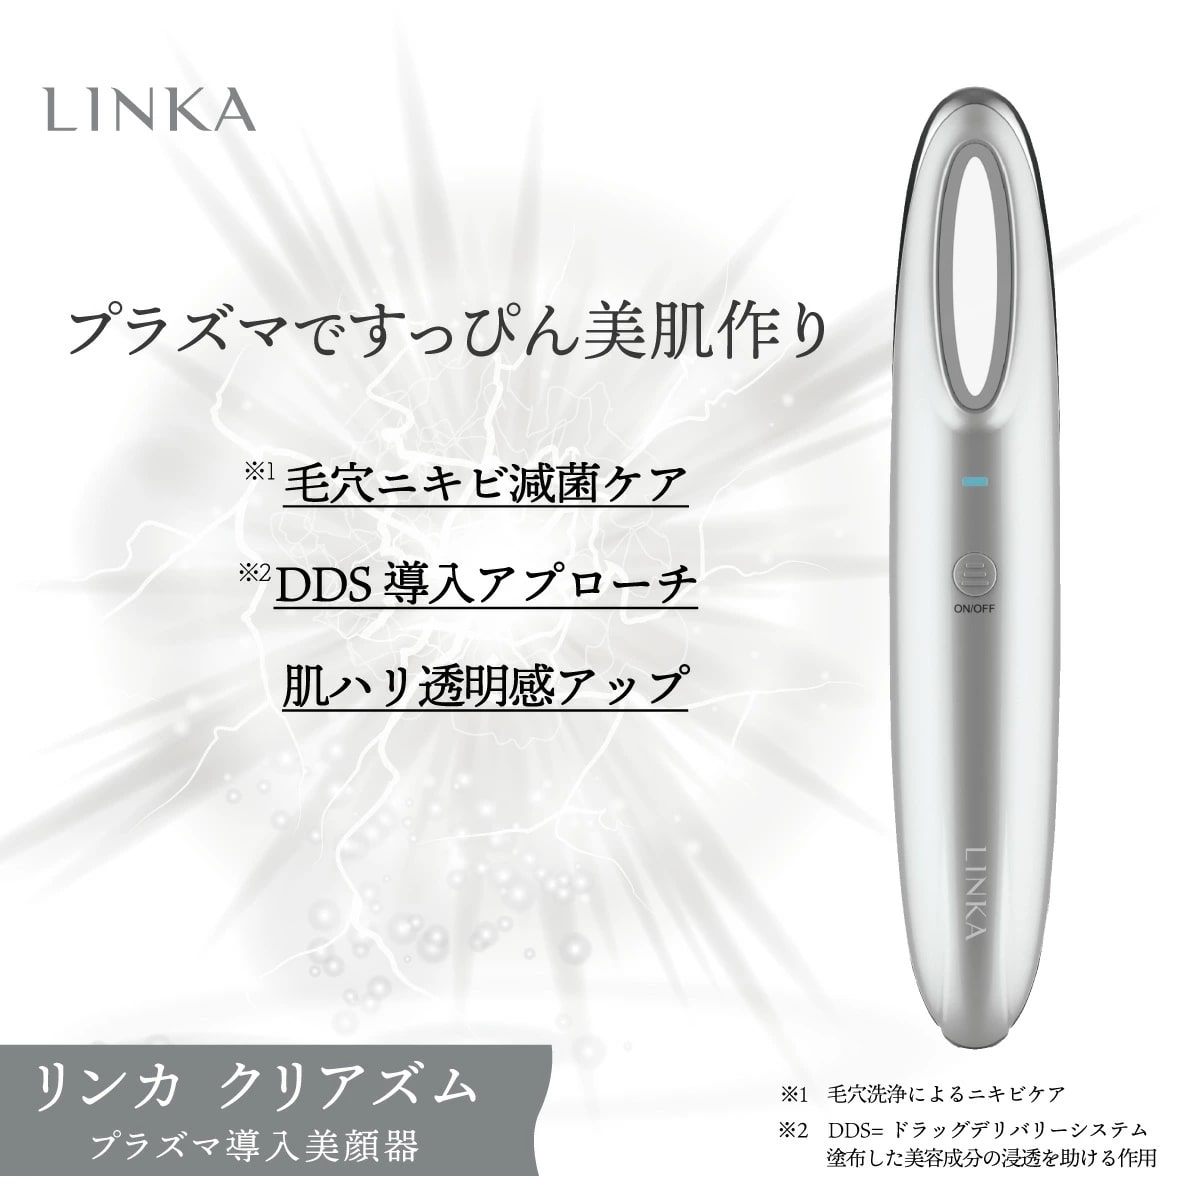 LINKA 導入用美容美顔器 アイビビッド 美顔器